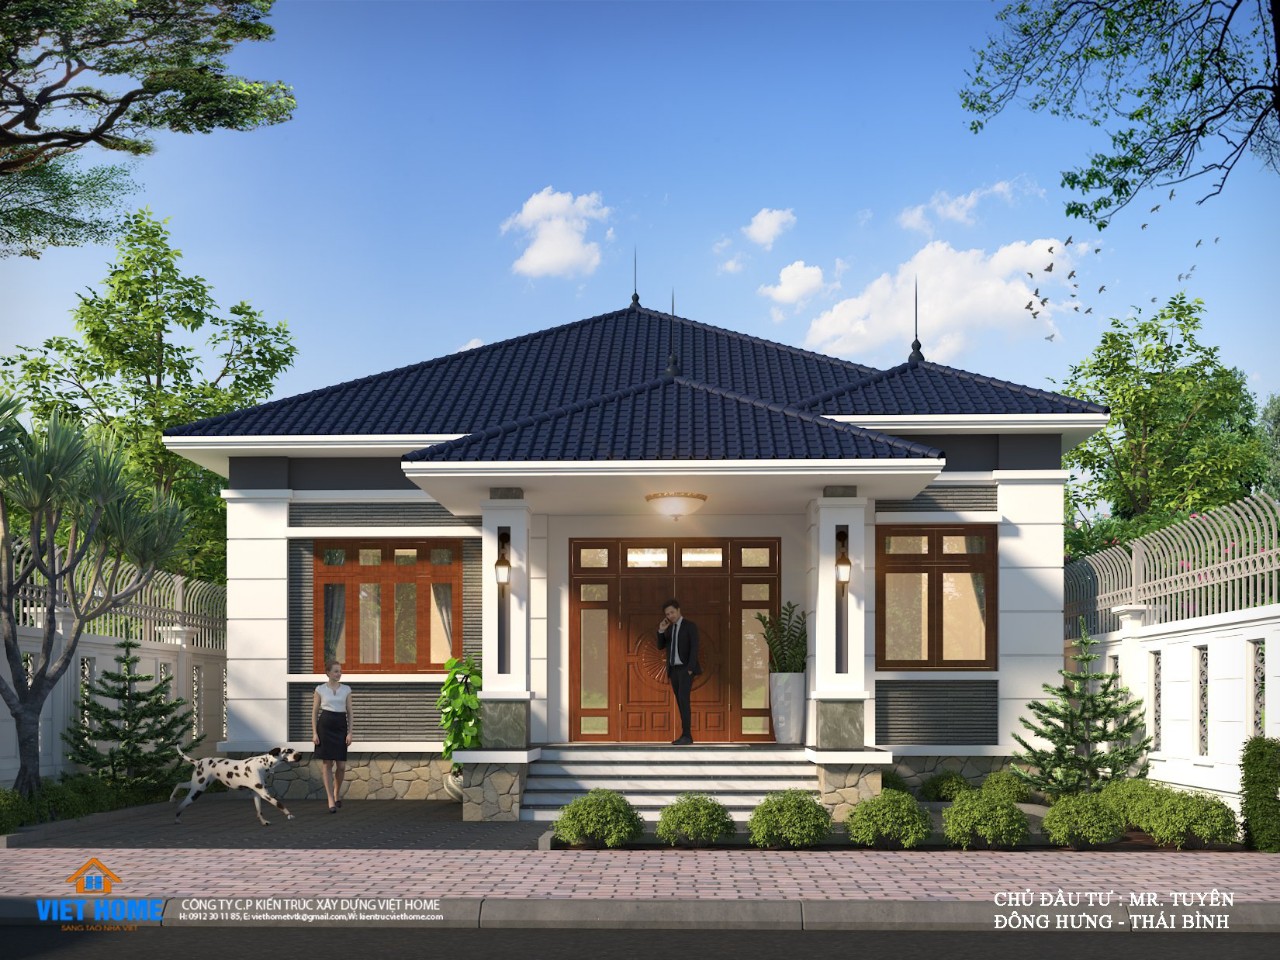 Mẫu nhà cấp 4 mái thái đẹp xây 800 triệu giá rẻ – Công ty xây dựng Phú  Nguyễn xây nhà trọn gói nhà phố,biệt thự,nhà xưởng ,văn phòng